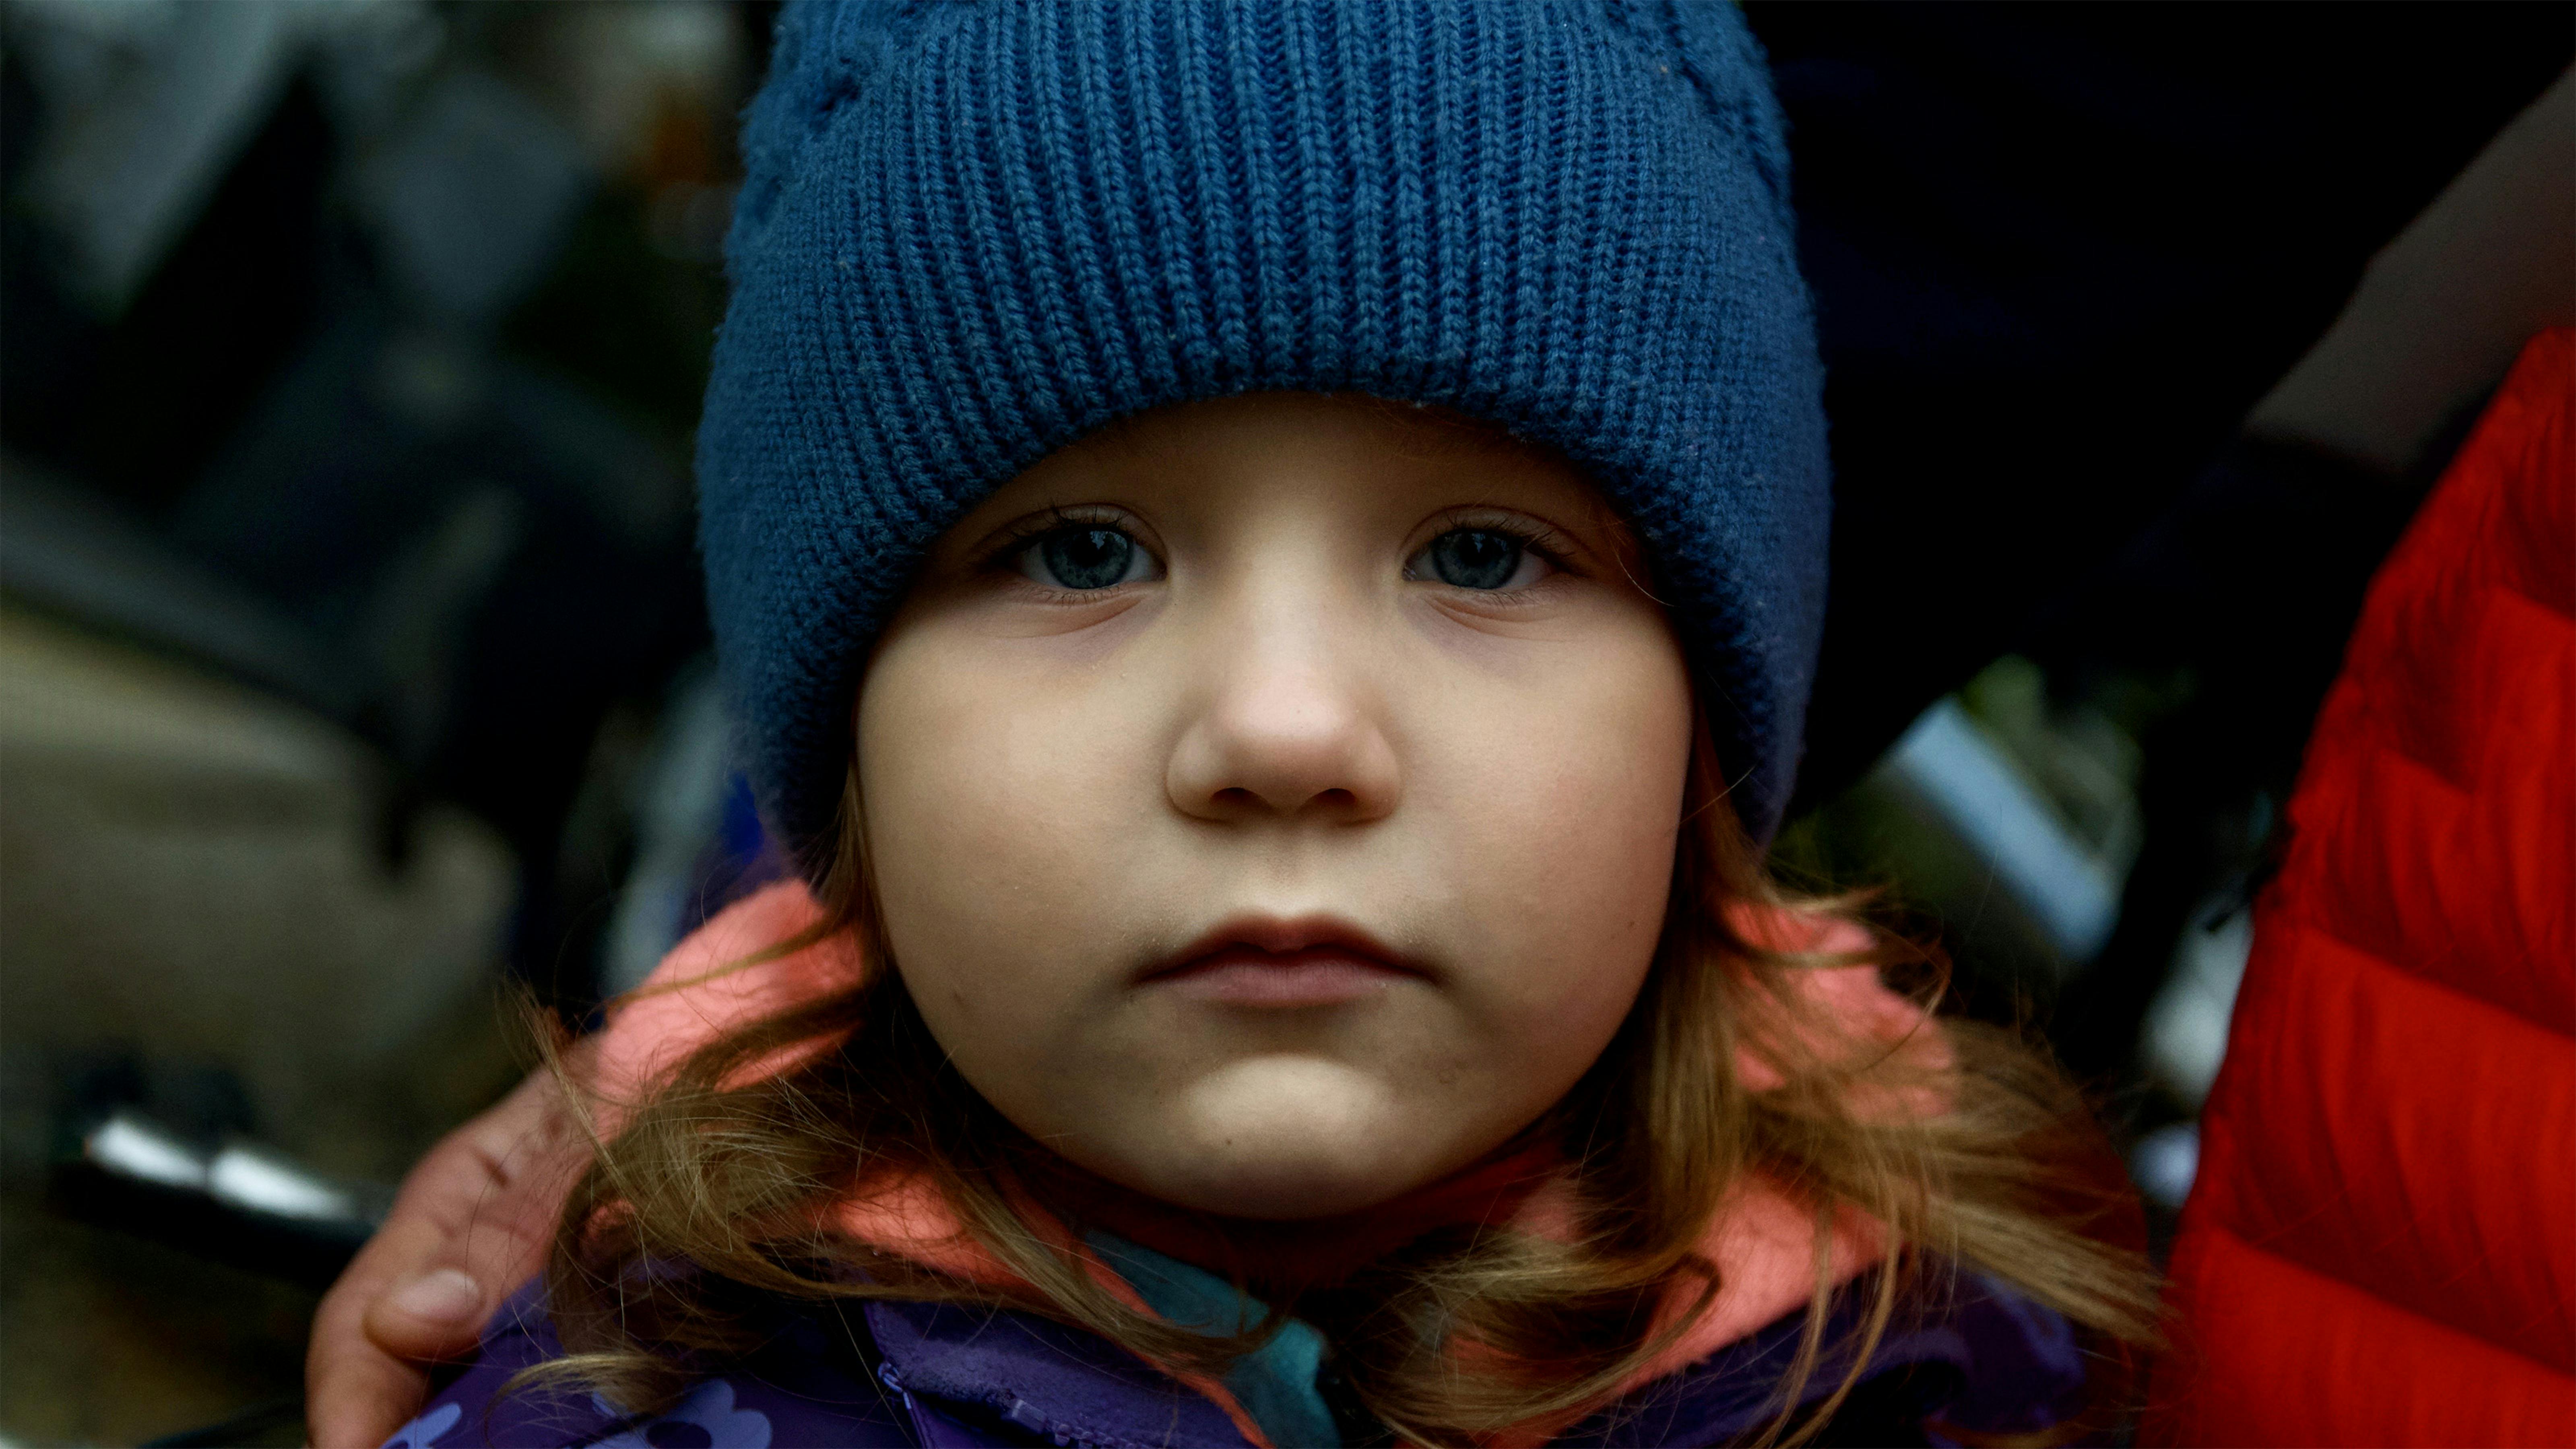 Scatto Gianmarco Sicuro, giornalista Rai. In foto una bambina di 8 anni, del Donbass, mentre è in fila assieme ad altre centinaia di persone per ricevere pane e latte